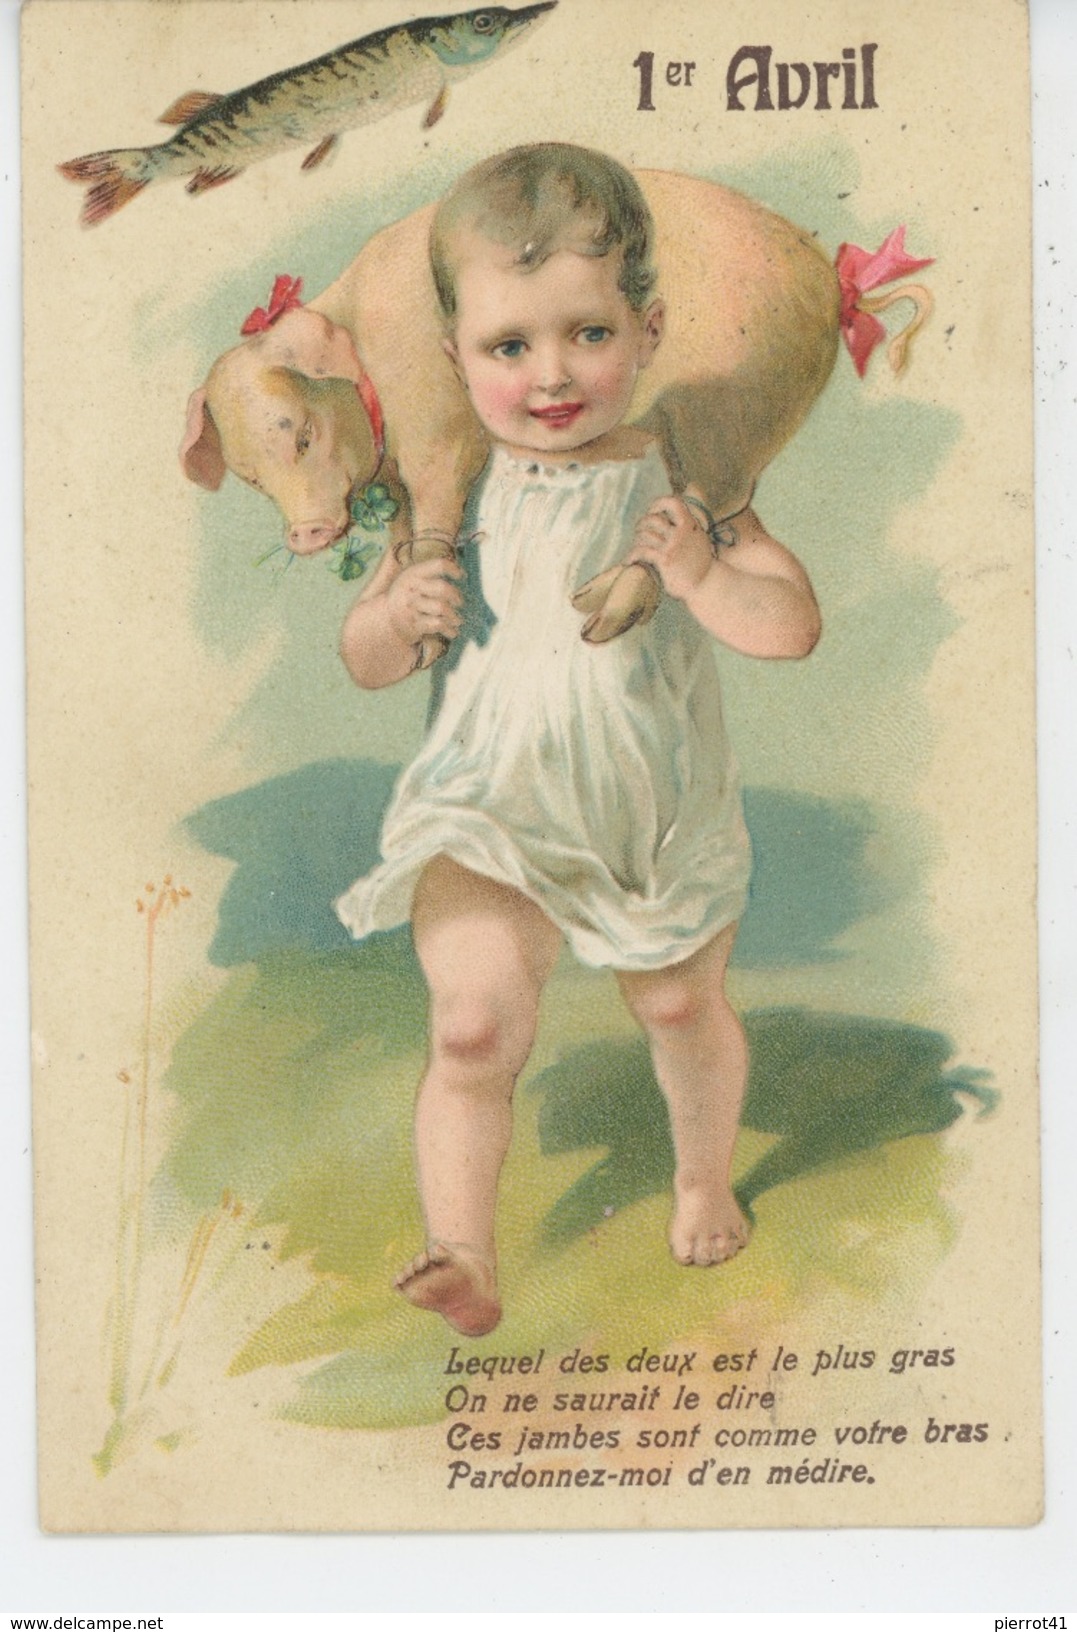 POISSON 1ER AVRIL - PIG - Jolie Carte Fantaisie Gaufrée Enfant Portant Un Cochon 1er Avril (embossed Postcard) - Erster April